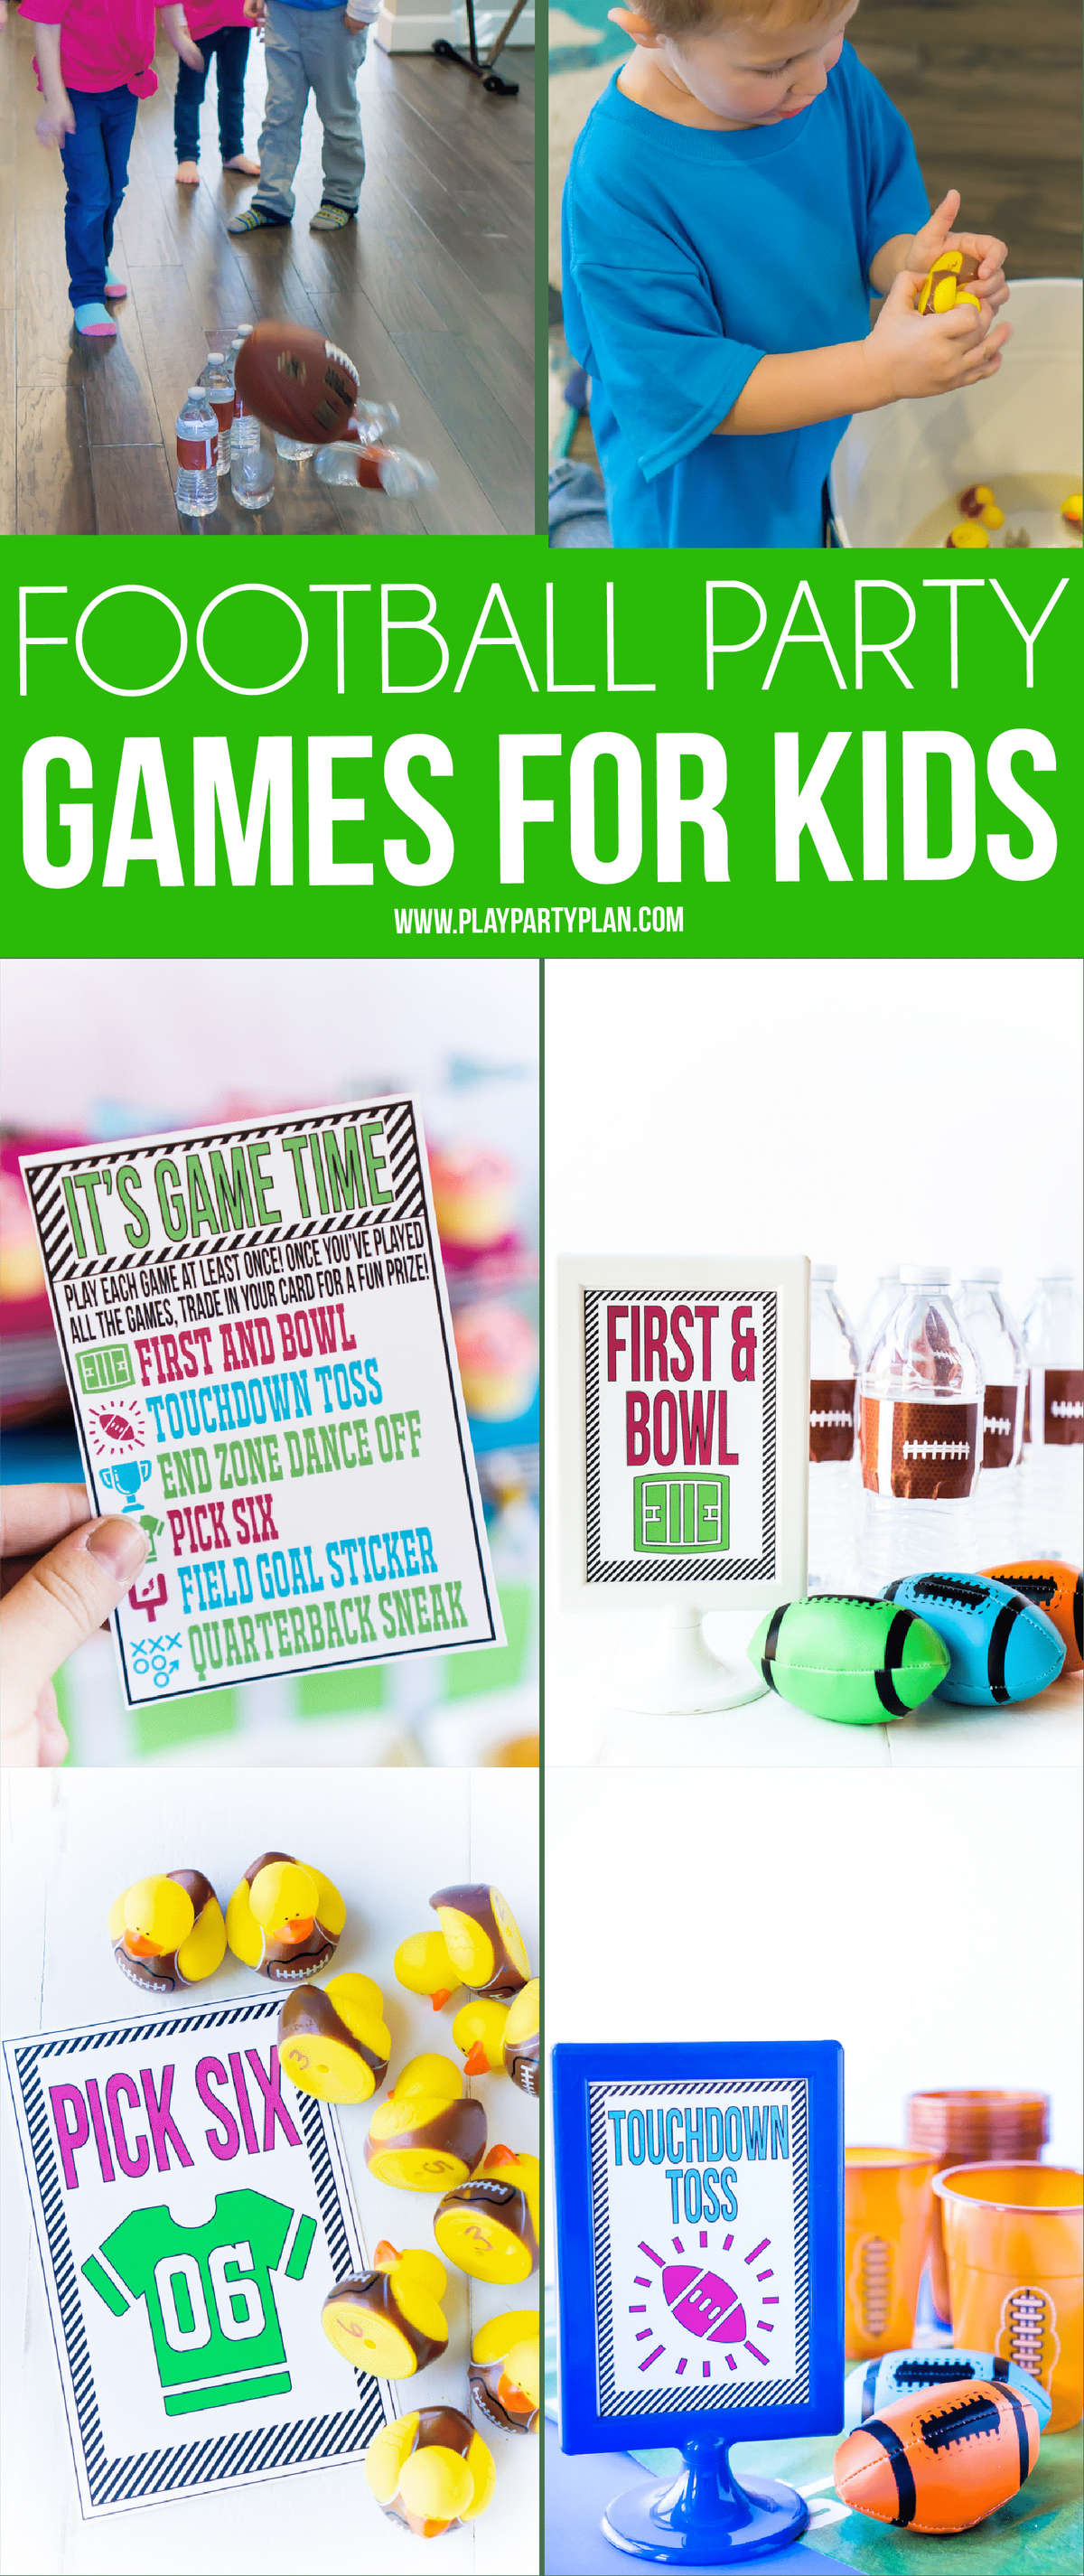 Jogos de futebol DIY para crianças com cartões de instruções para impressão grátis! Definitivamente, seis das melhores coisas para fazer em uma festa de futebol, seja no Super Bowl ou em uma festa de aniversário de futebol infantil!